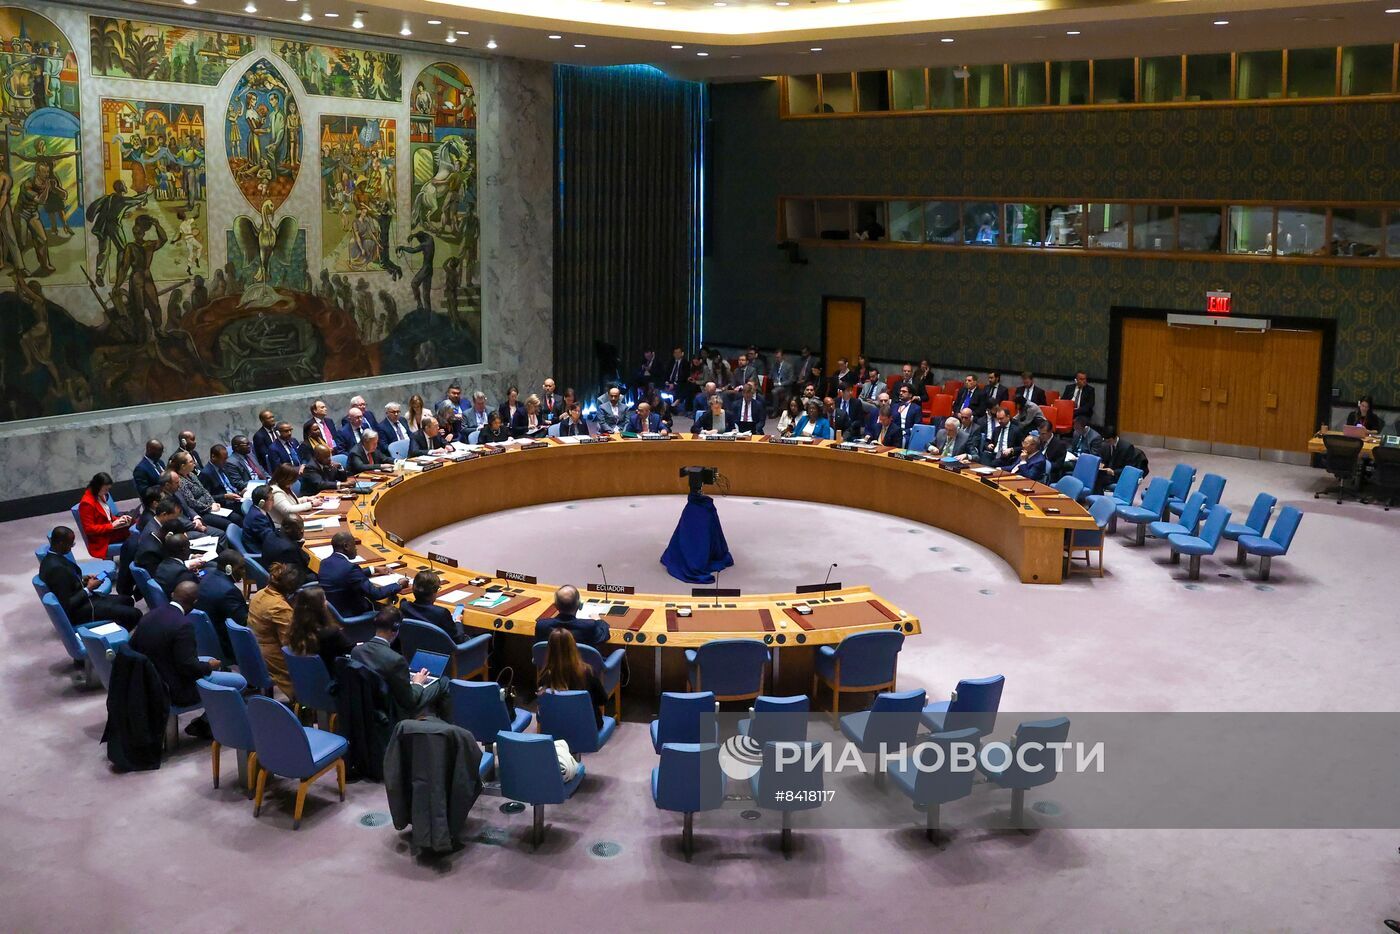 نيبينزيا: روسيا لا تستطيع قبول تقاعس مجلس الأمن الدولي عن تسوية الأزمة في الشرق الأوسط